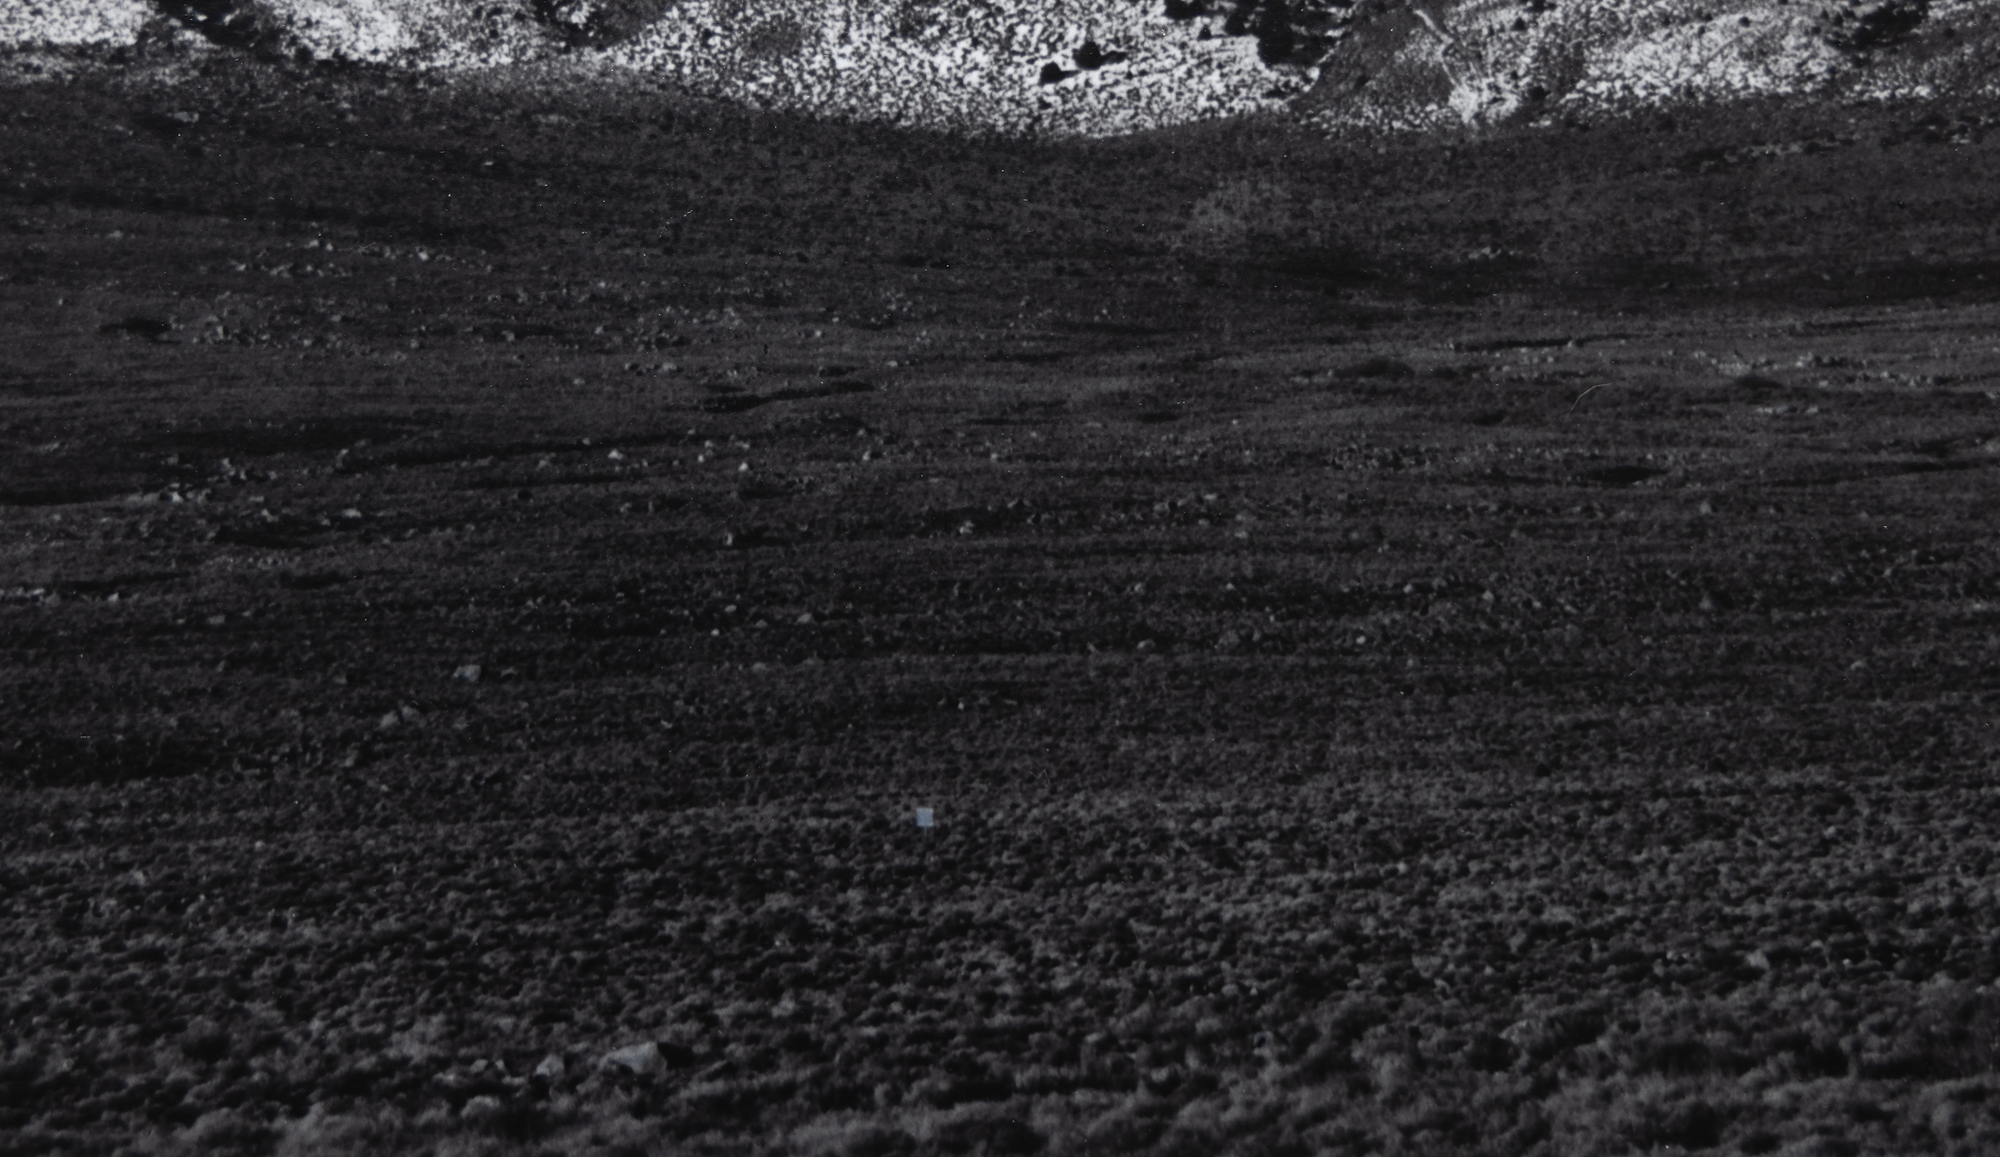 La exploración de Ansel Adams del valle de Owens y las vistas de la imponente ladera oriental de Sierra Nevada tienen un significado inmenso. Se encuentran entre las fotografías más emblemáticas que permitieron a Adams captar la majestuosidad de Sierra Nevada y, al mismo tiempo, dar una vívida impresión de la profundidad y extensión del árido fondo del valle. El monte Williamson, Sierra Nevada, desde el valle de Owens, fue fotografiado probablemente en 1944, poco después de incorporar el sistema de zonas que permitía una amplia gama tonal y una exposición equilibrada con claridad tanto en las altas luces como en las sombras. El presente ejemplar, impreso en agosto de 1978, forma parte de la colección de muchos museos, pero entre los coleccionistas se encuentra entre las impresiones más raras de Ansel Adams.